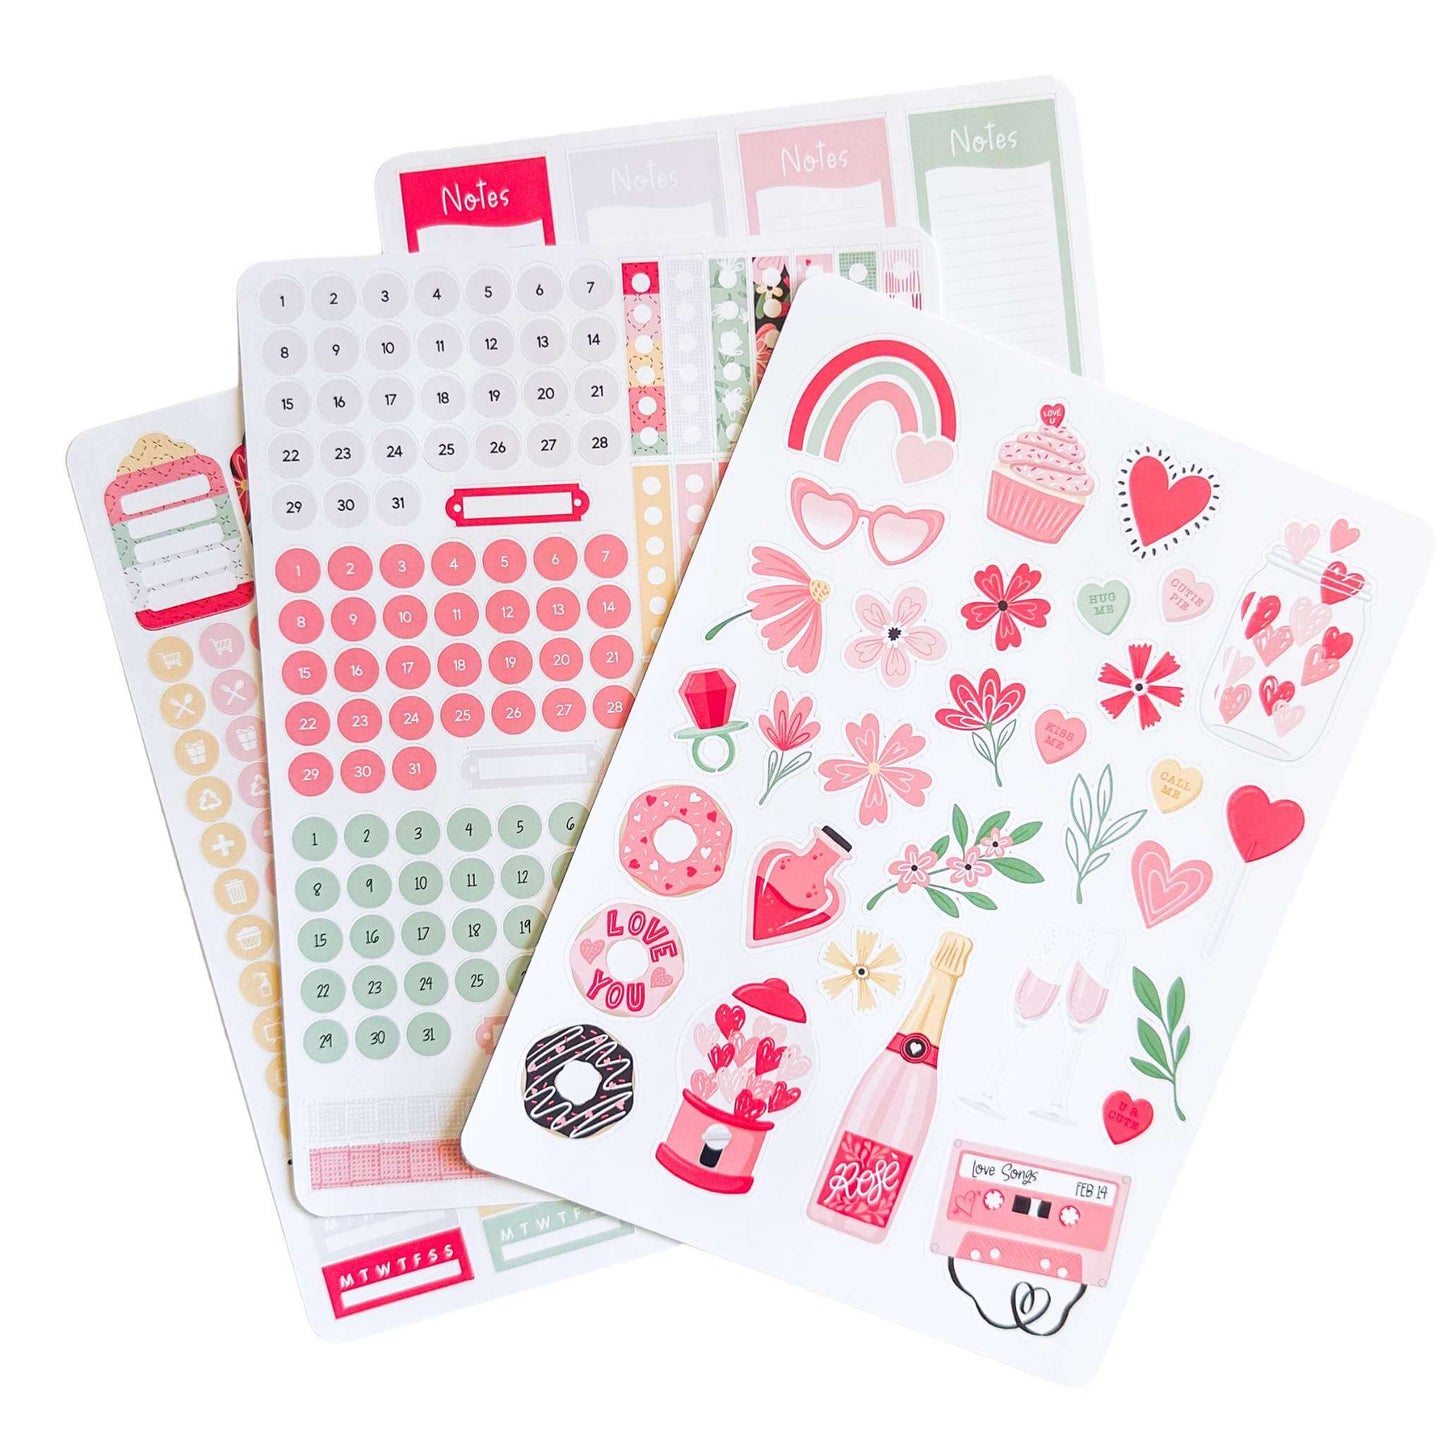 Get planning sticker sheets - Valentines